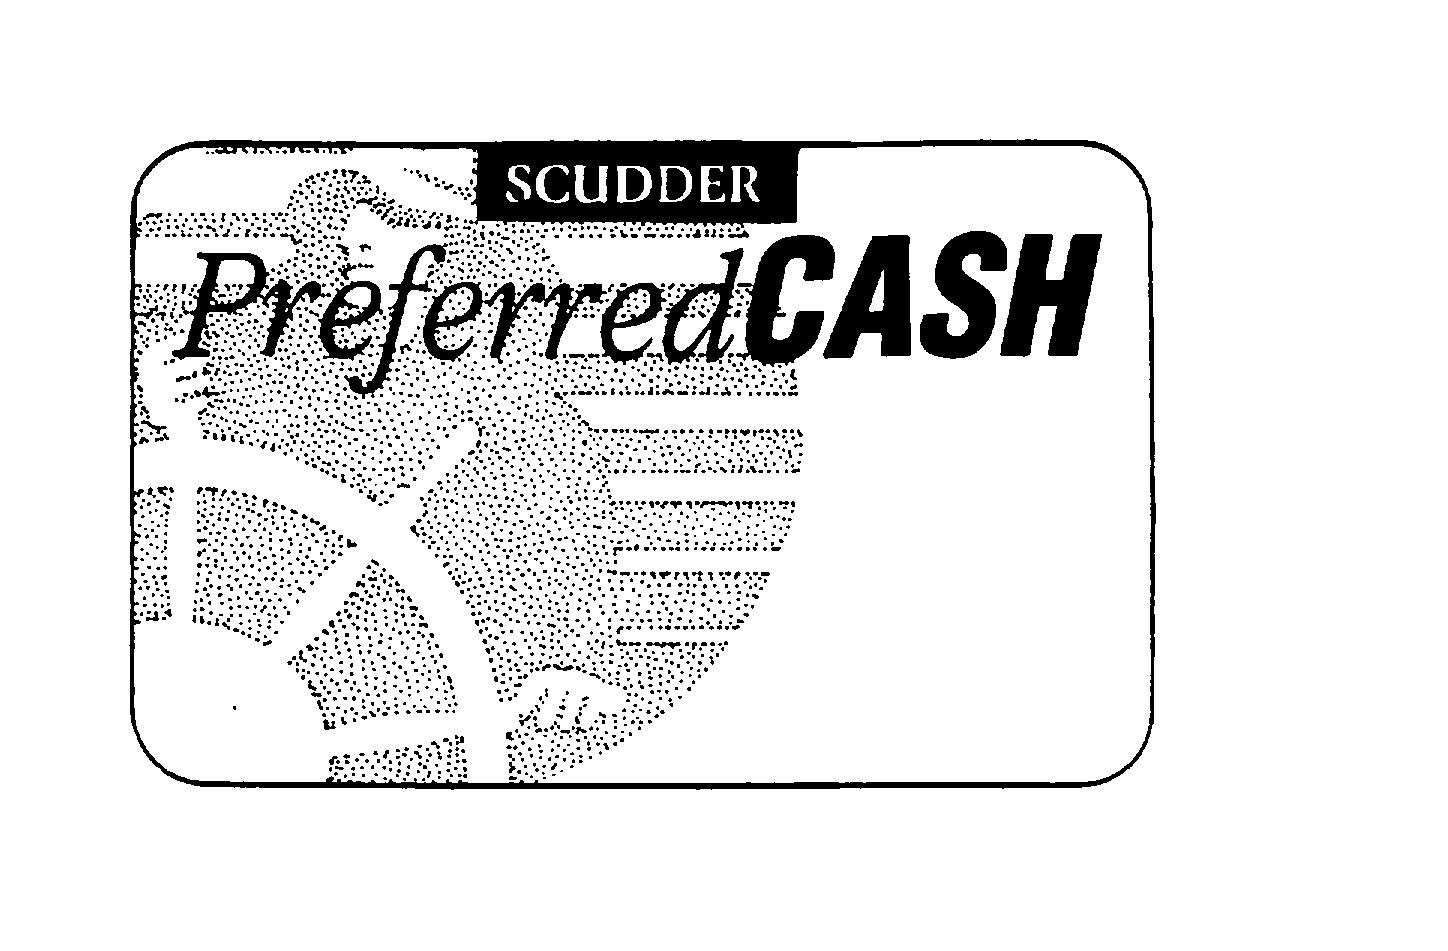  SCUDDER PREFERRED CASH